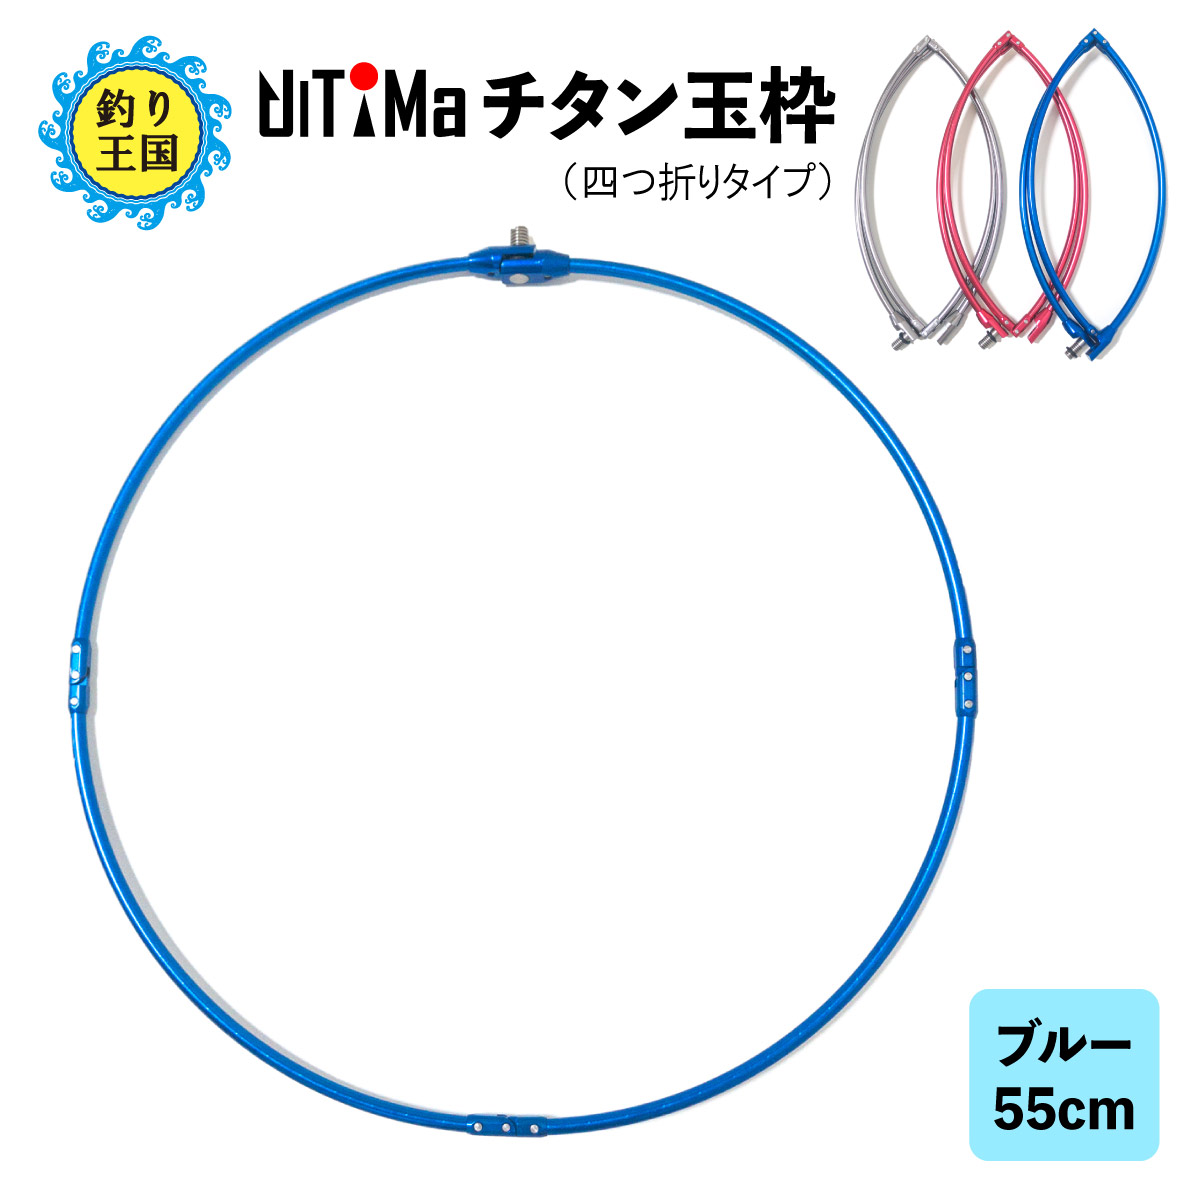 【楽天市場】UlTiMa アルテマ チタン玉枠 タモ枠 60cm レッド 頑丈 